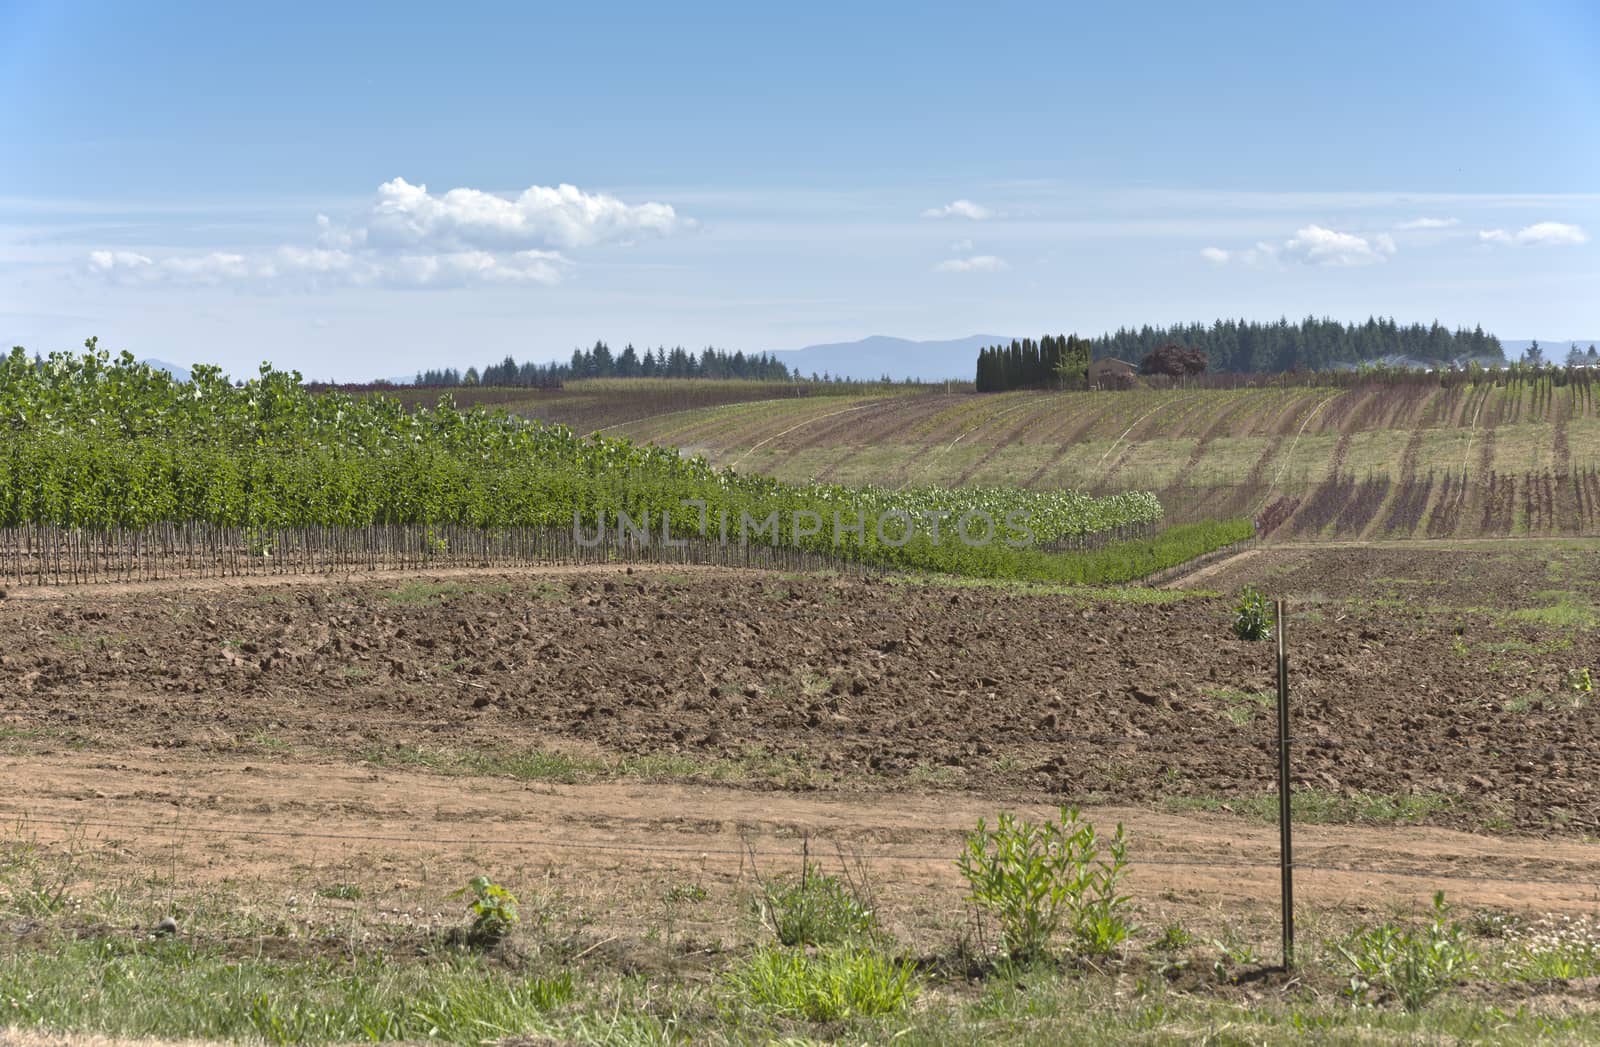 Plant agriculture and nursery near Sandy Oregon.